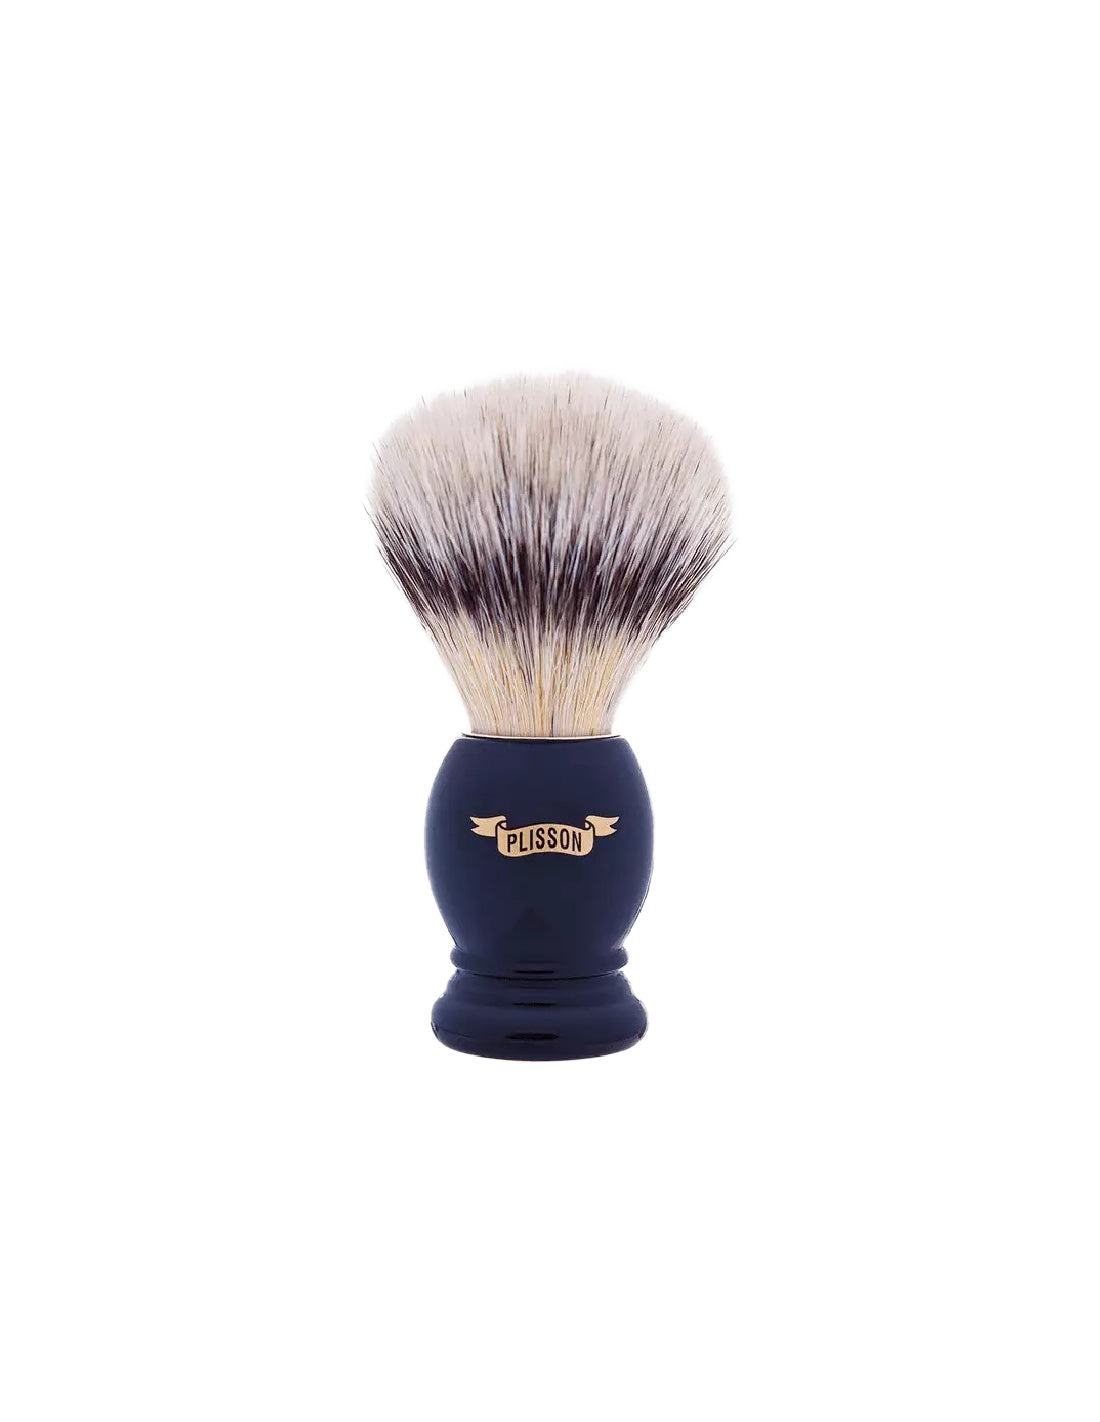 Plisson 1808 Original Shaving Brush "High Mountain White" Fibre - 5 Colors